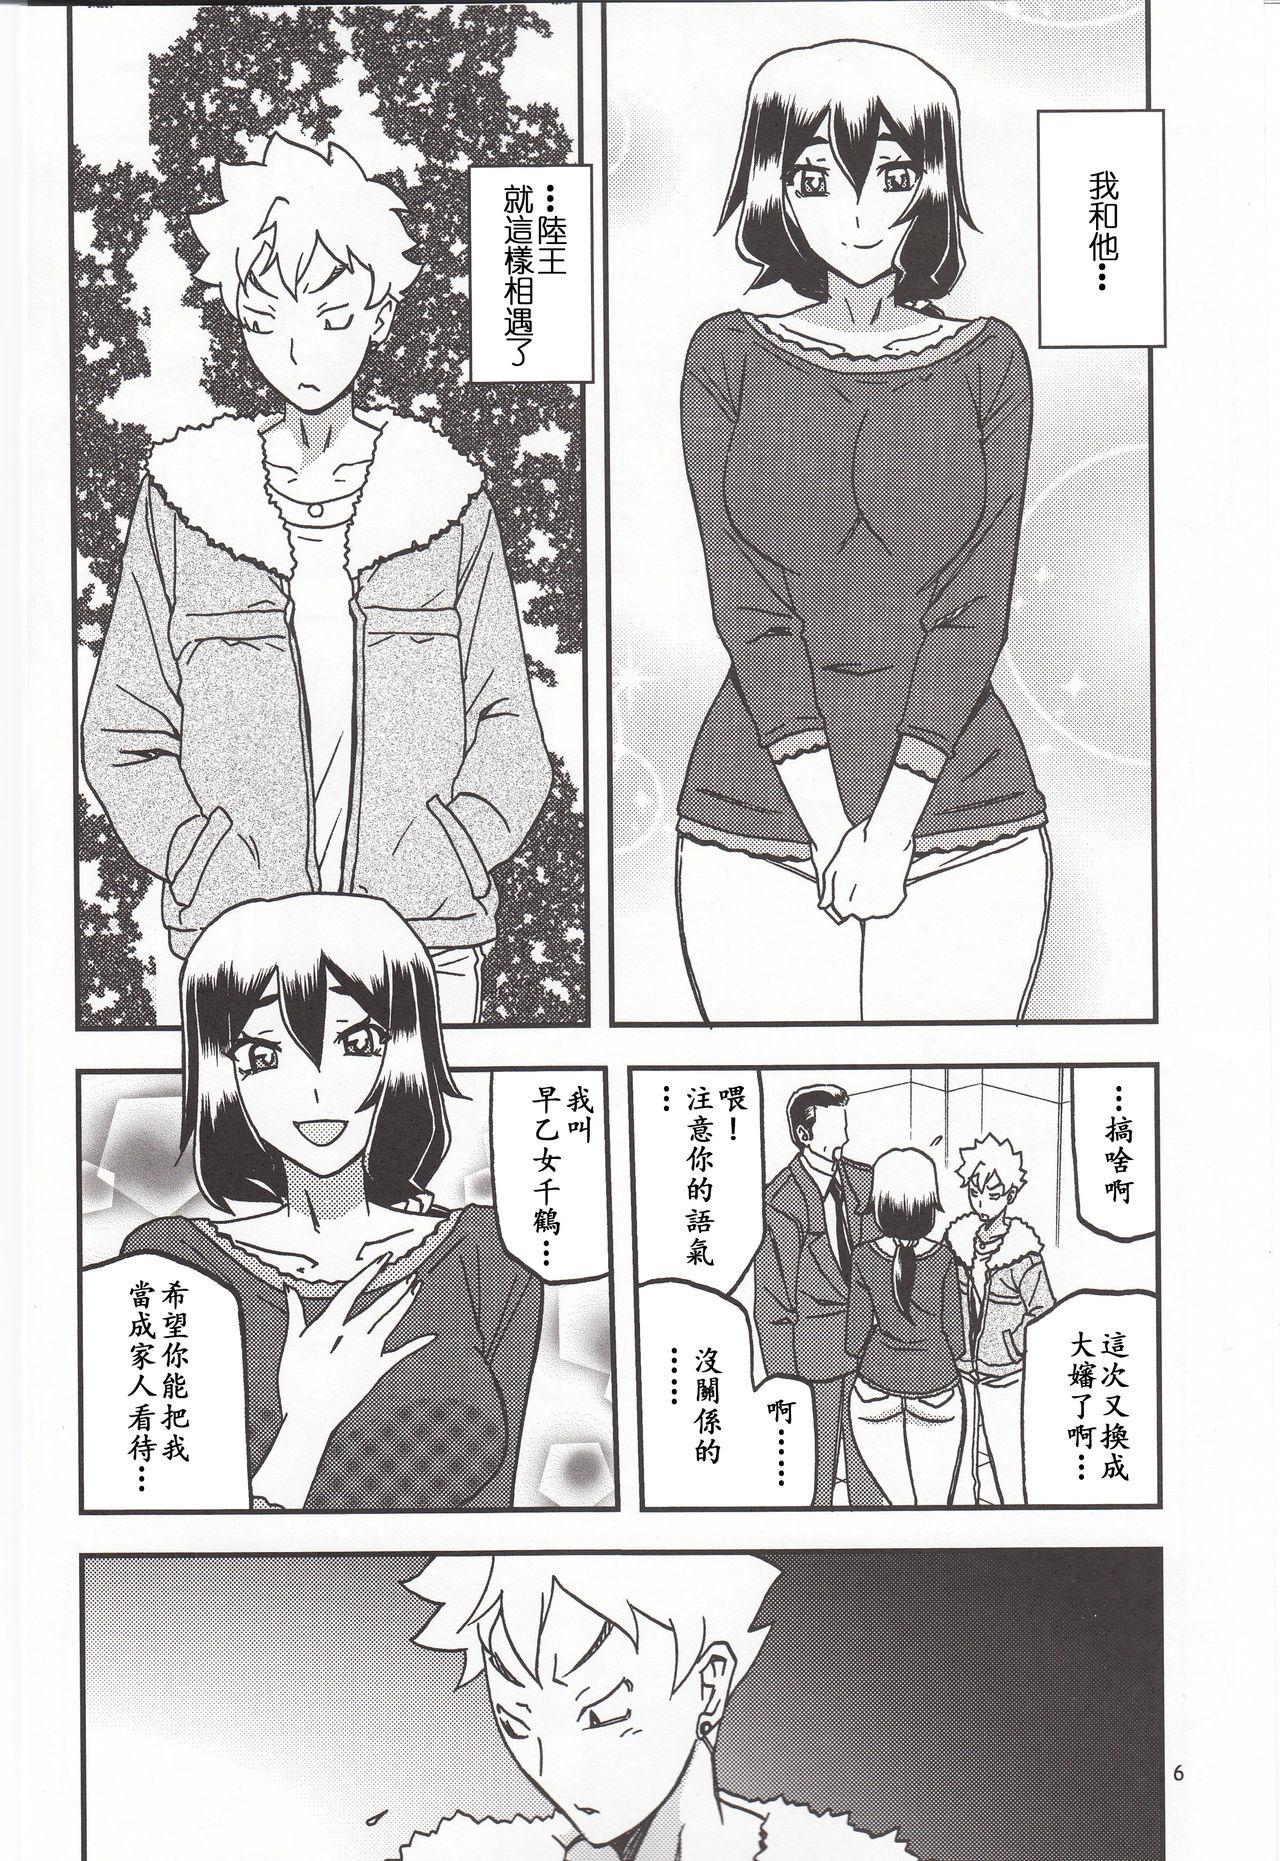 Spycam Akebi no Mi - Chizuru Katei - Akebi no mi Amature - Page 5